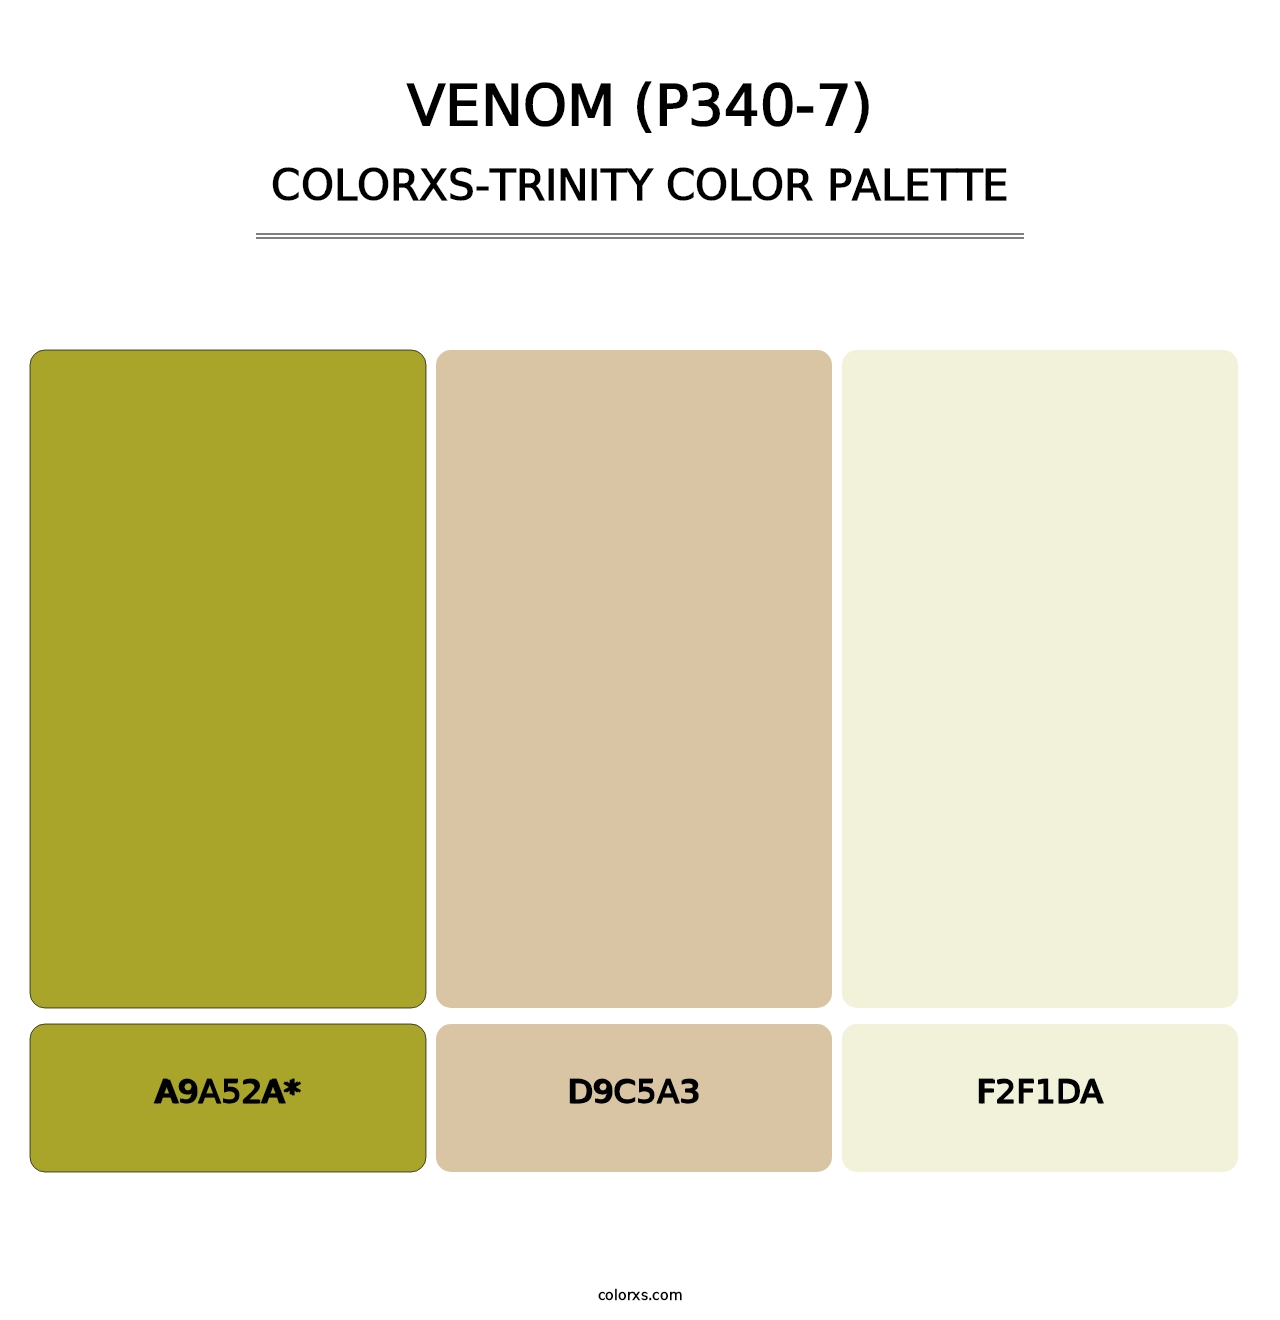 Venom (P340-7) - Colorxs Trinity Palette